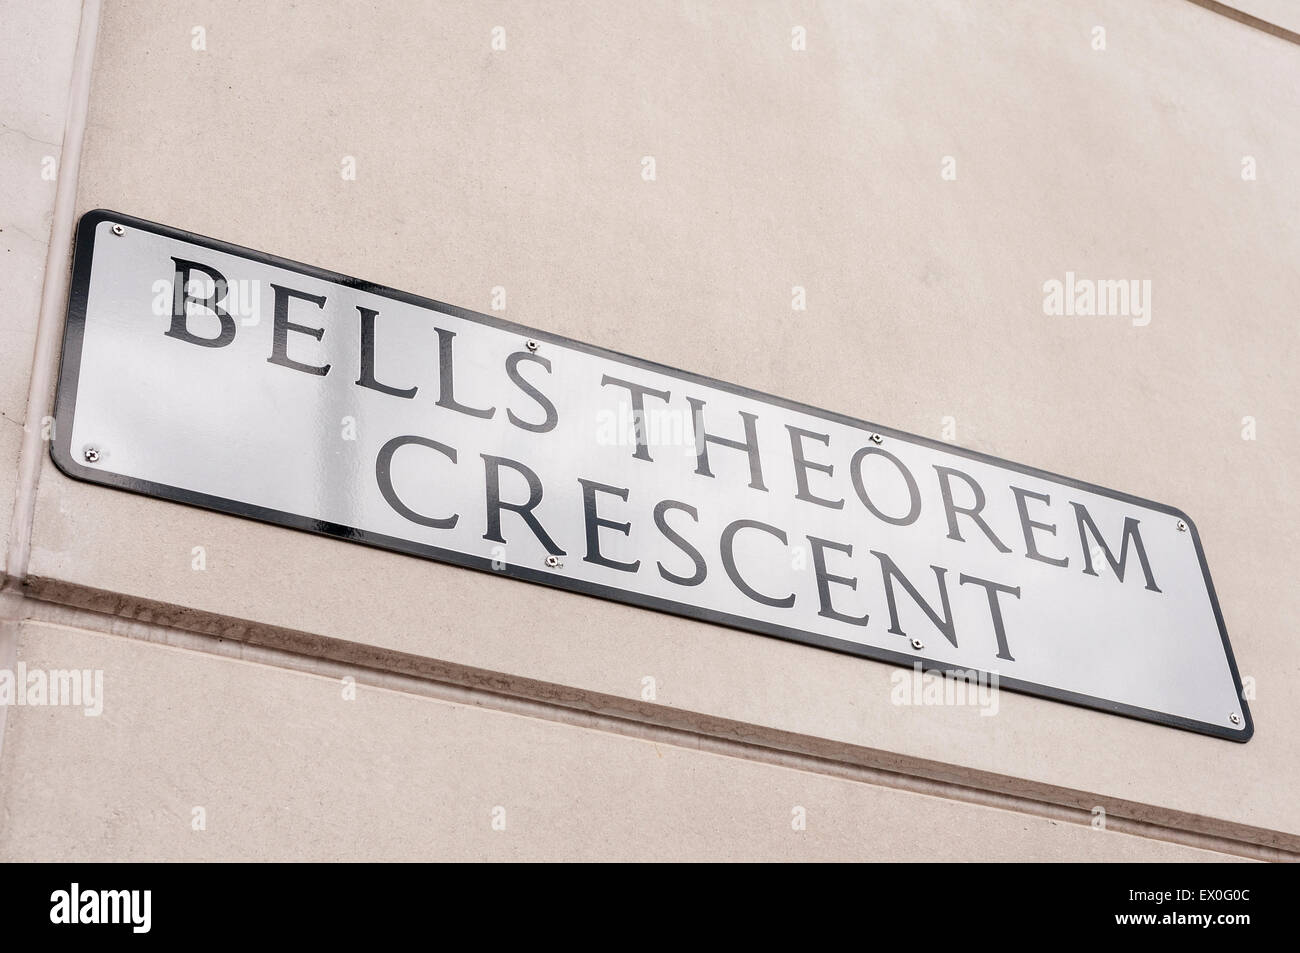 Panneau pour le croissant Theorem de Bell à Belfast, nommé d'après John Stewart Bell et son célèbre théorème de physique quantique Banque D'Images